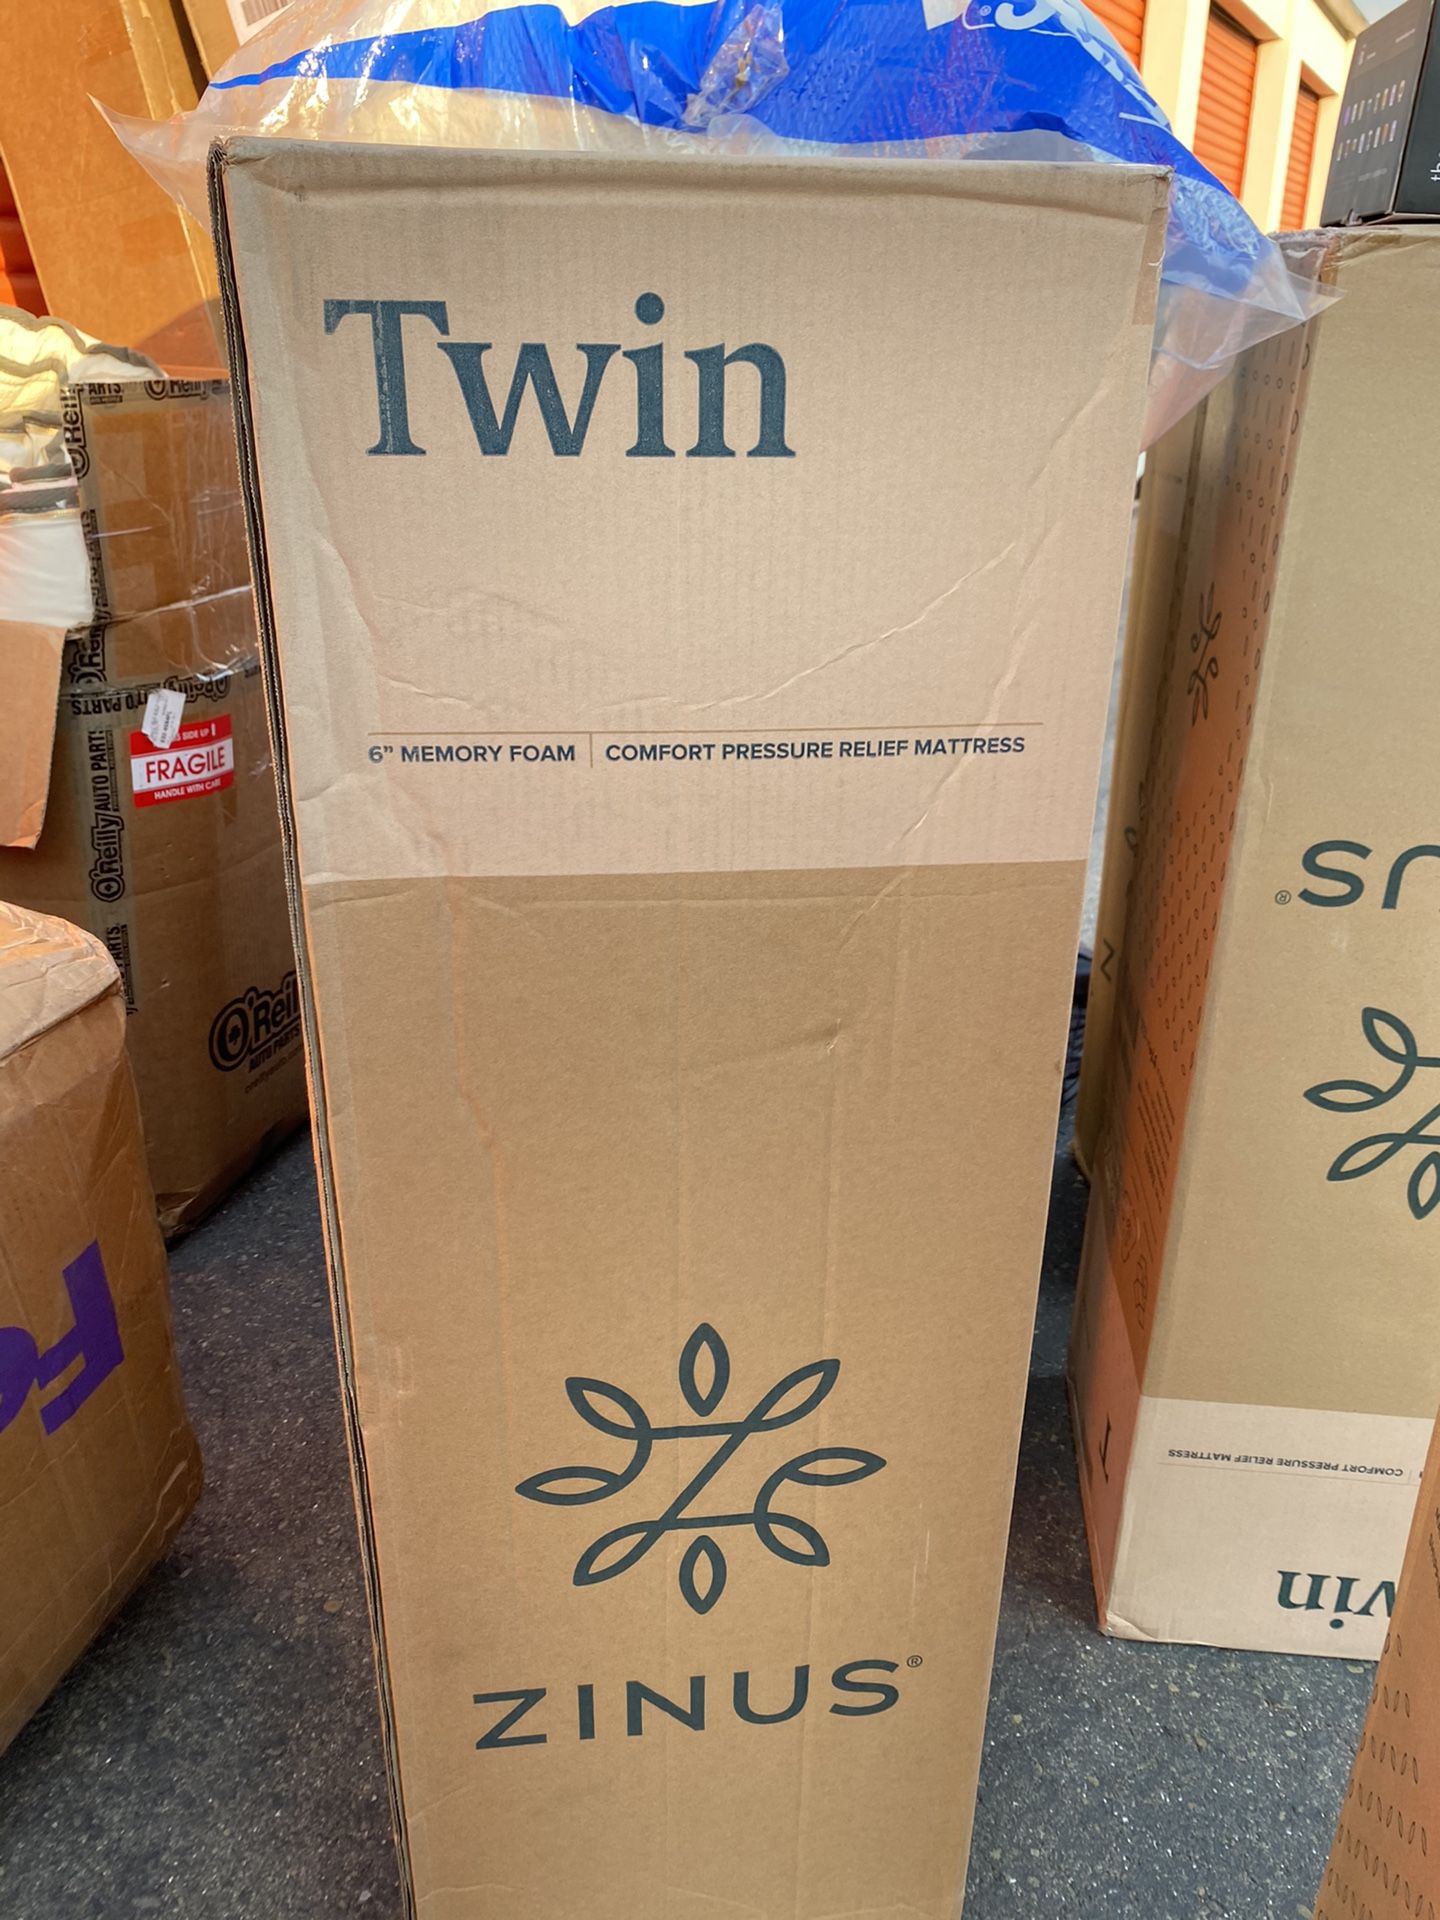 Brand new twin size 6” memory foam zinus mattress!